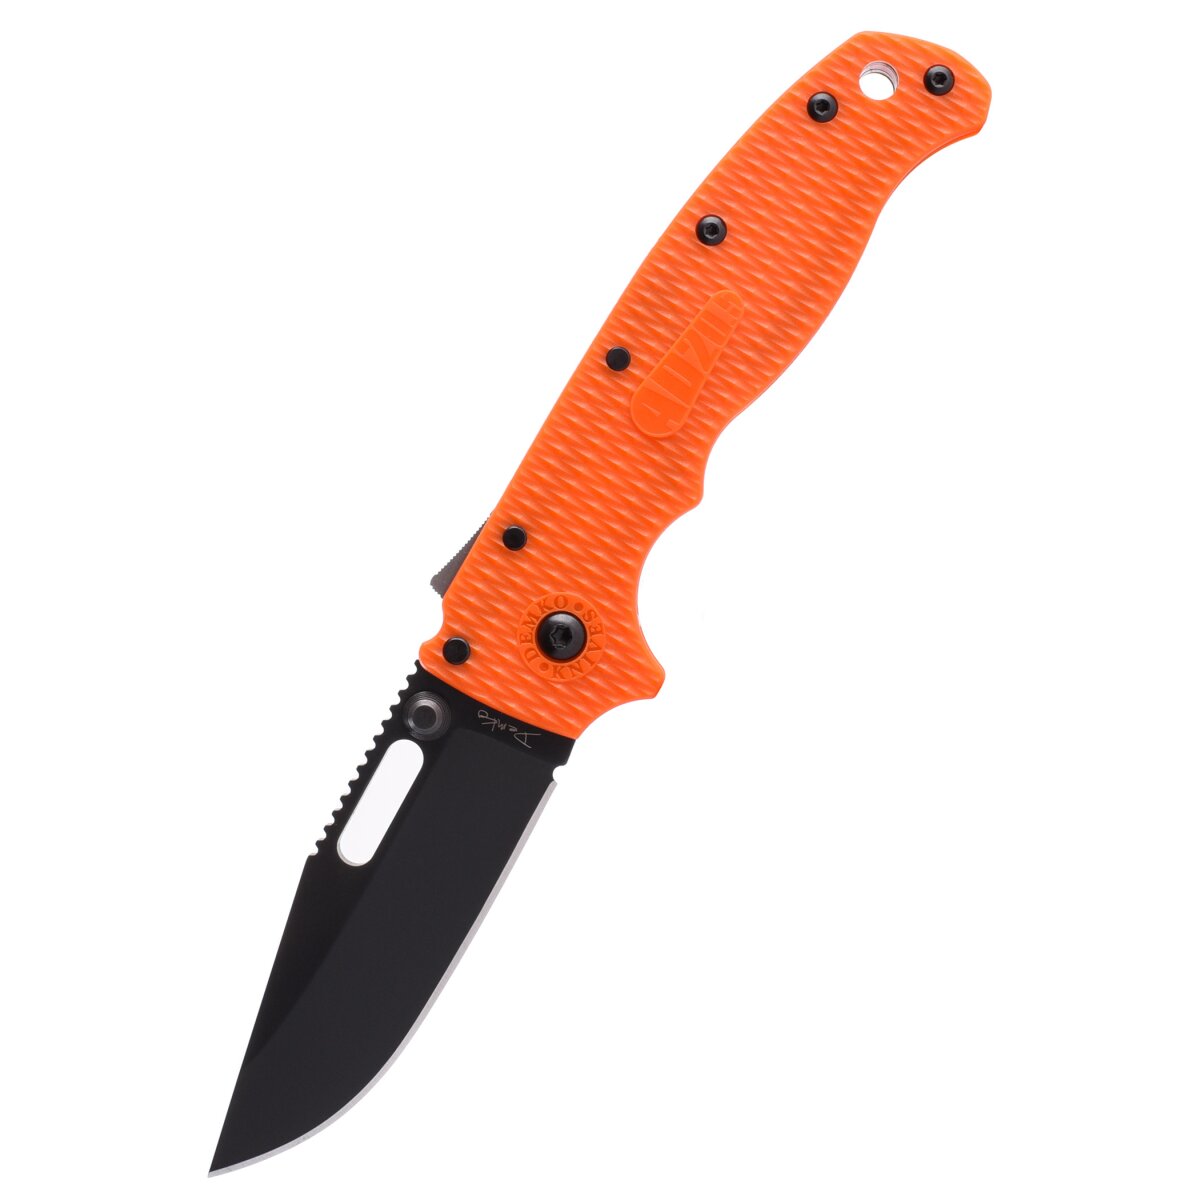 Couteau de poche Demko AD20.5 Clip Point, Orange, DLC